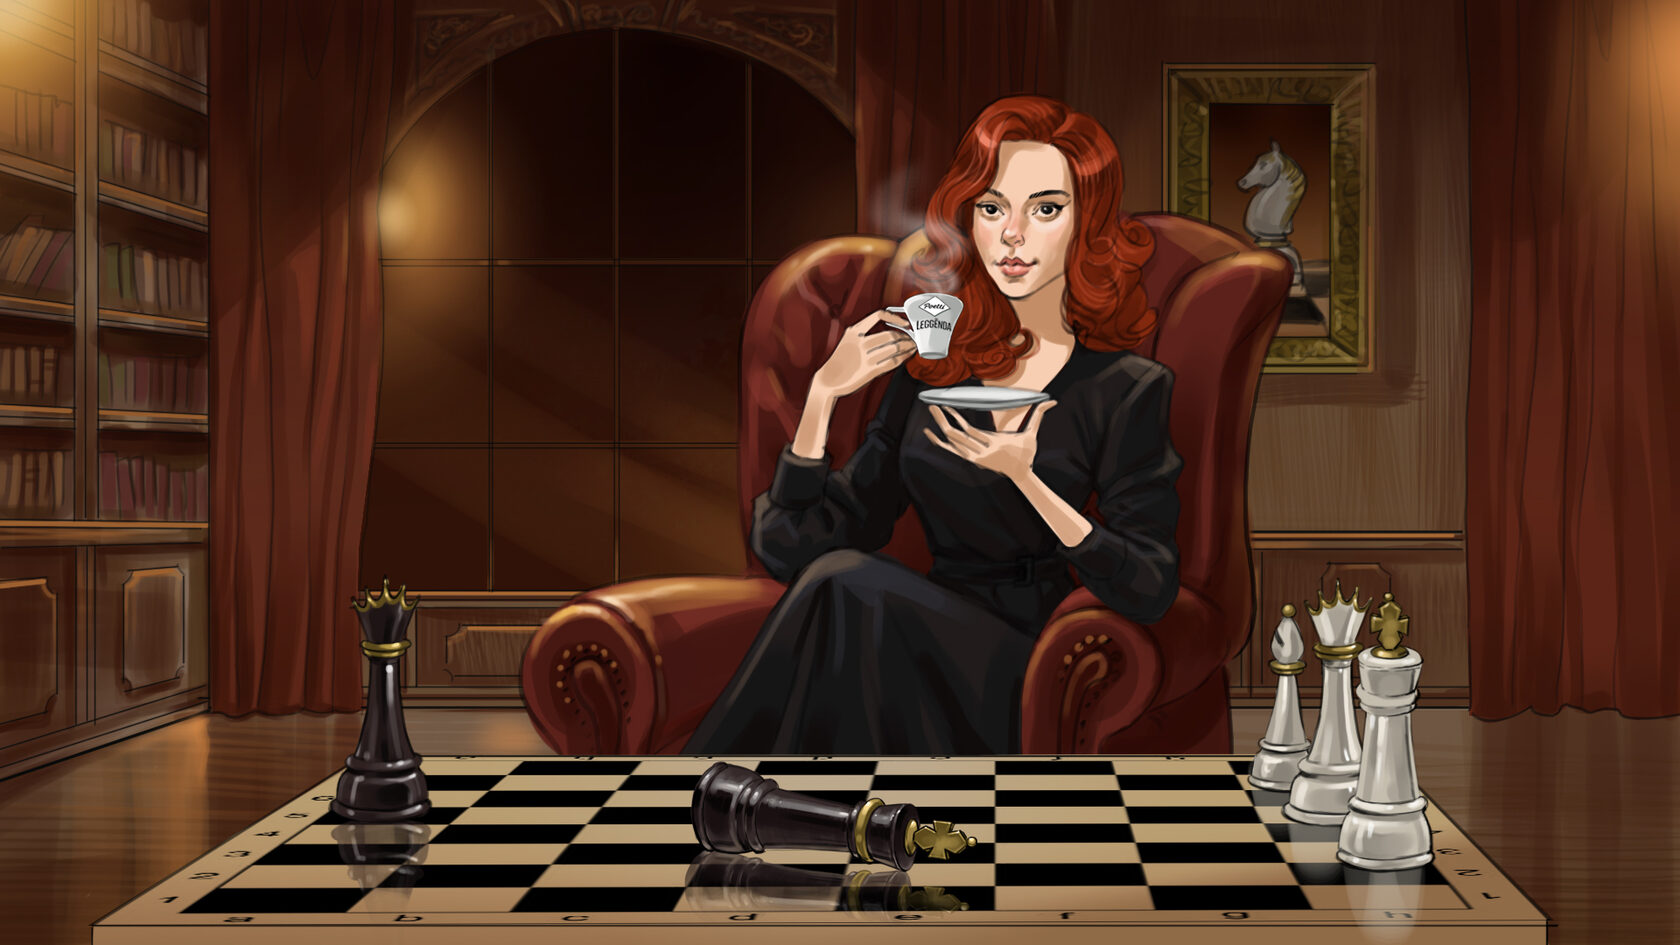 Сториборд женщина с рыжими волосами пьет кофе и играет в шахматы